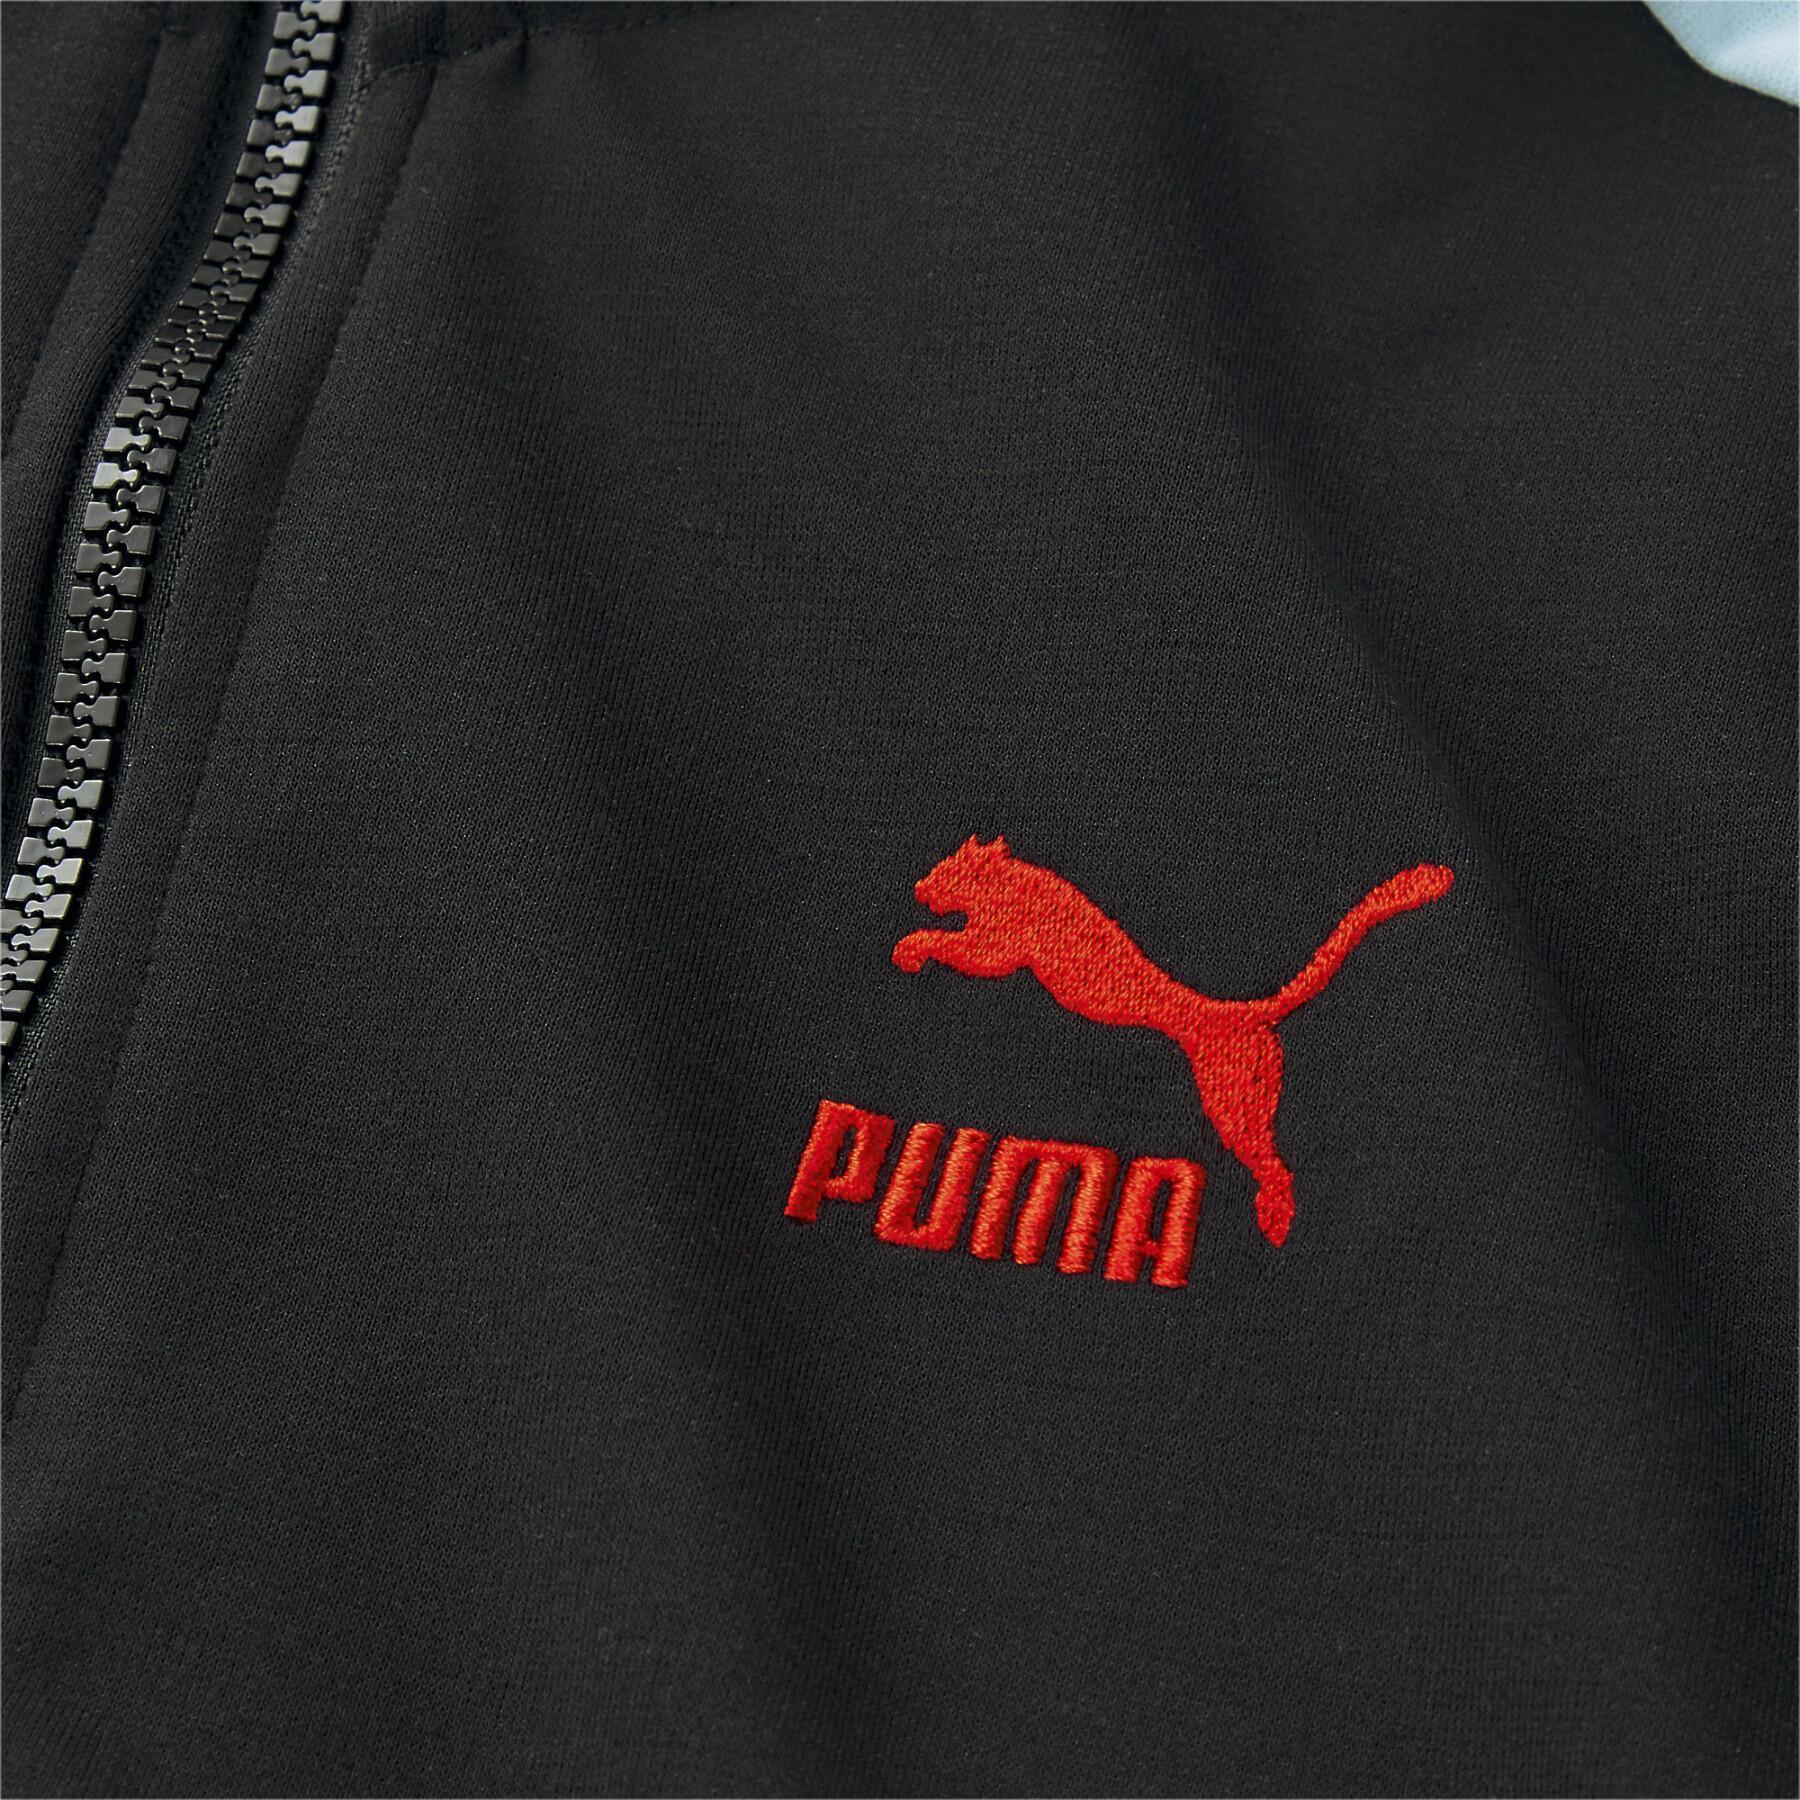 Damska krótka bluza dresowa Puma X Dua lipa T7